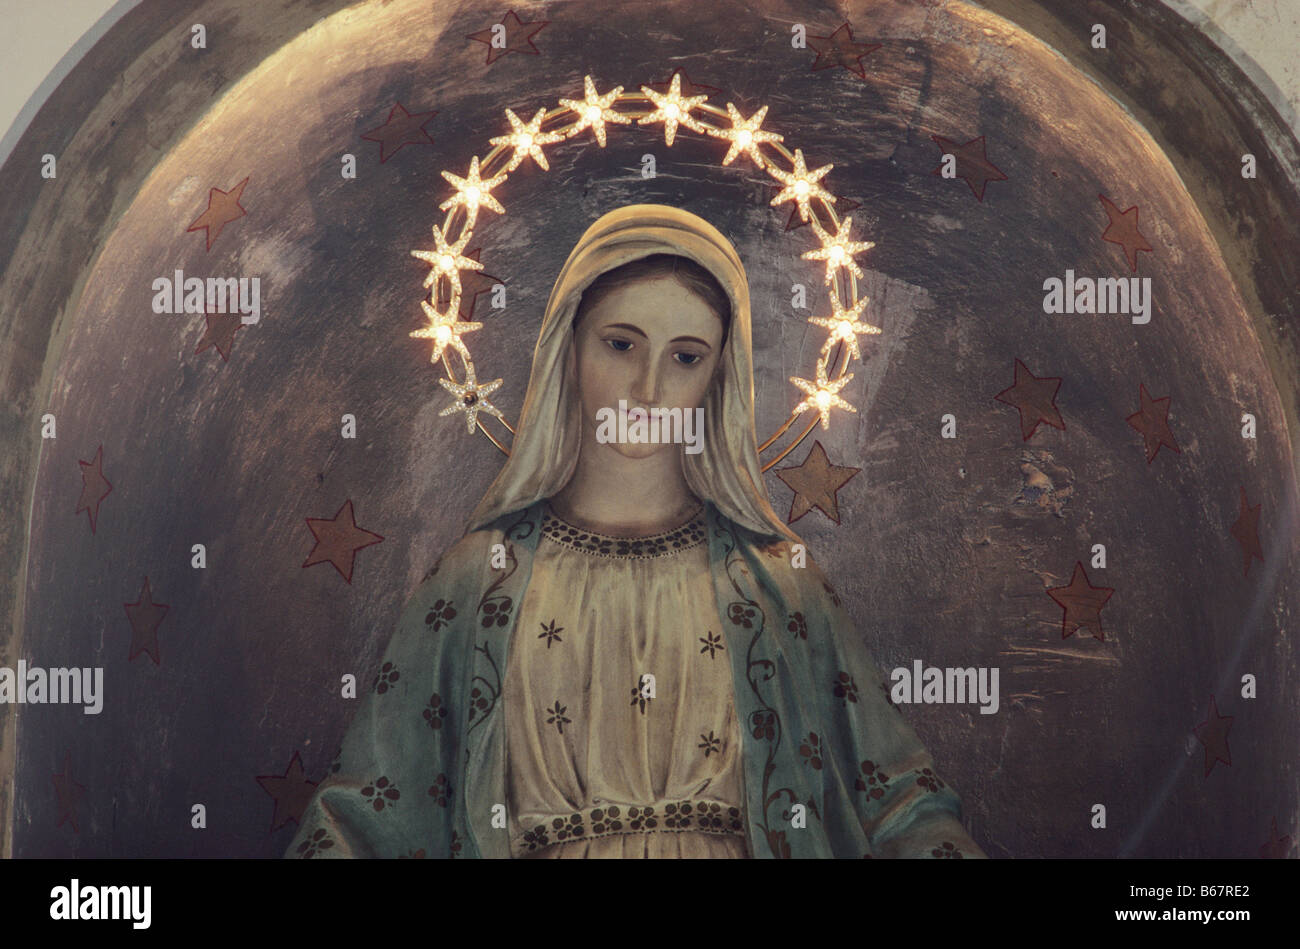 Virgin Mary with halo of stars, church, Proceno, village, Tuscany, Italy Stock Photo